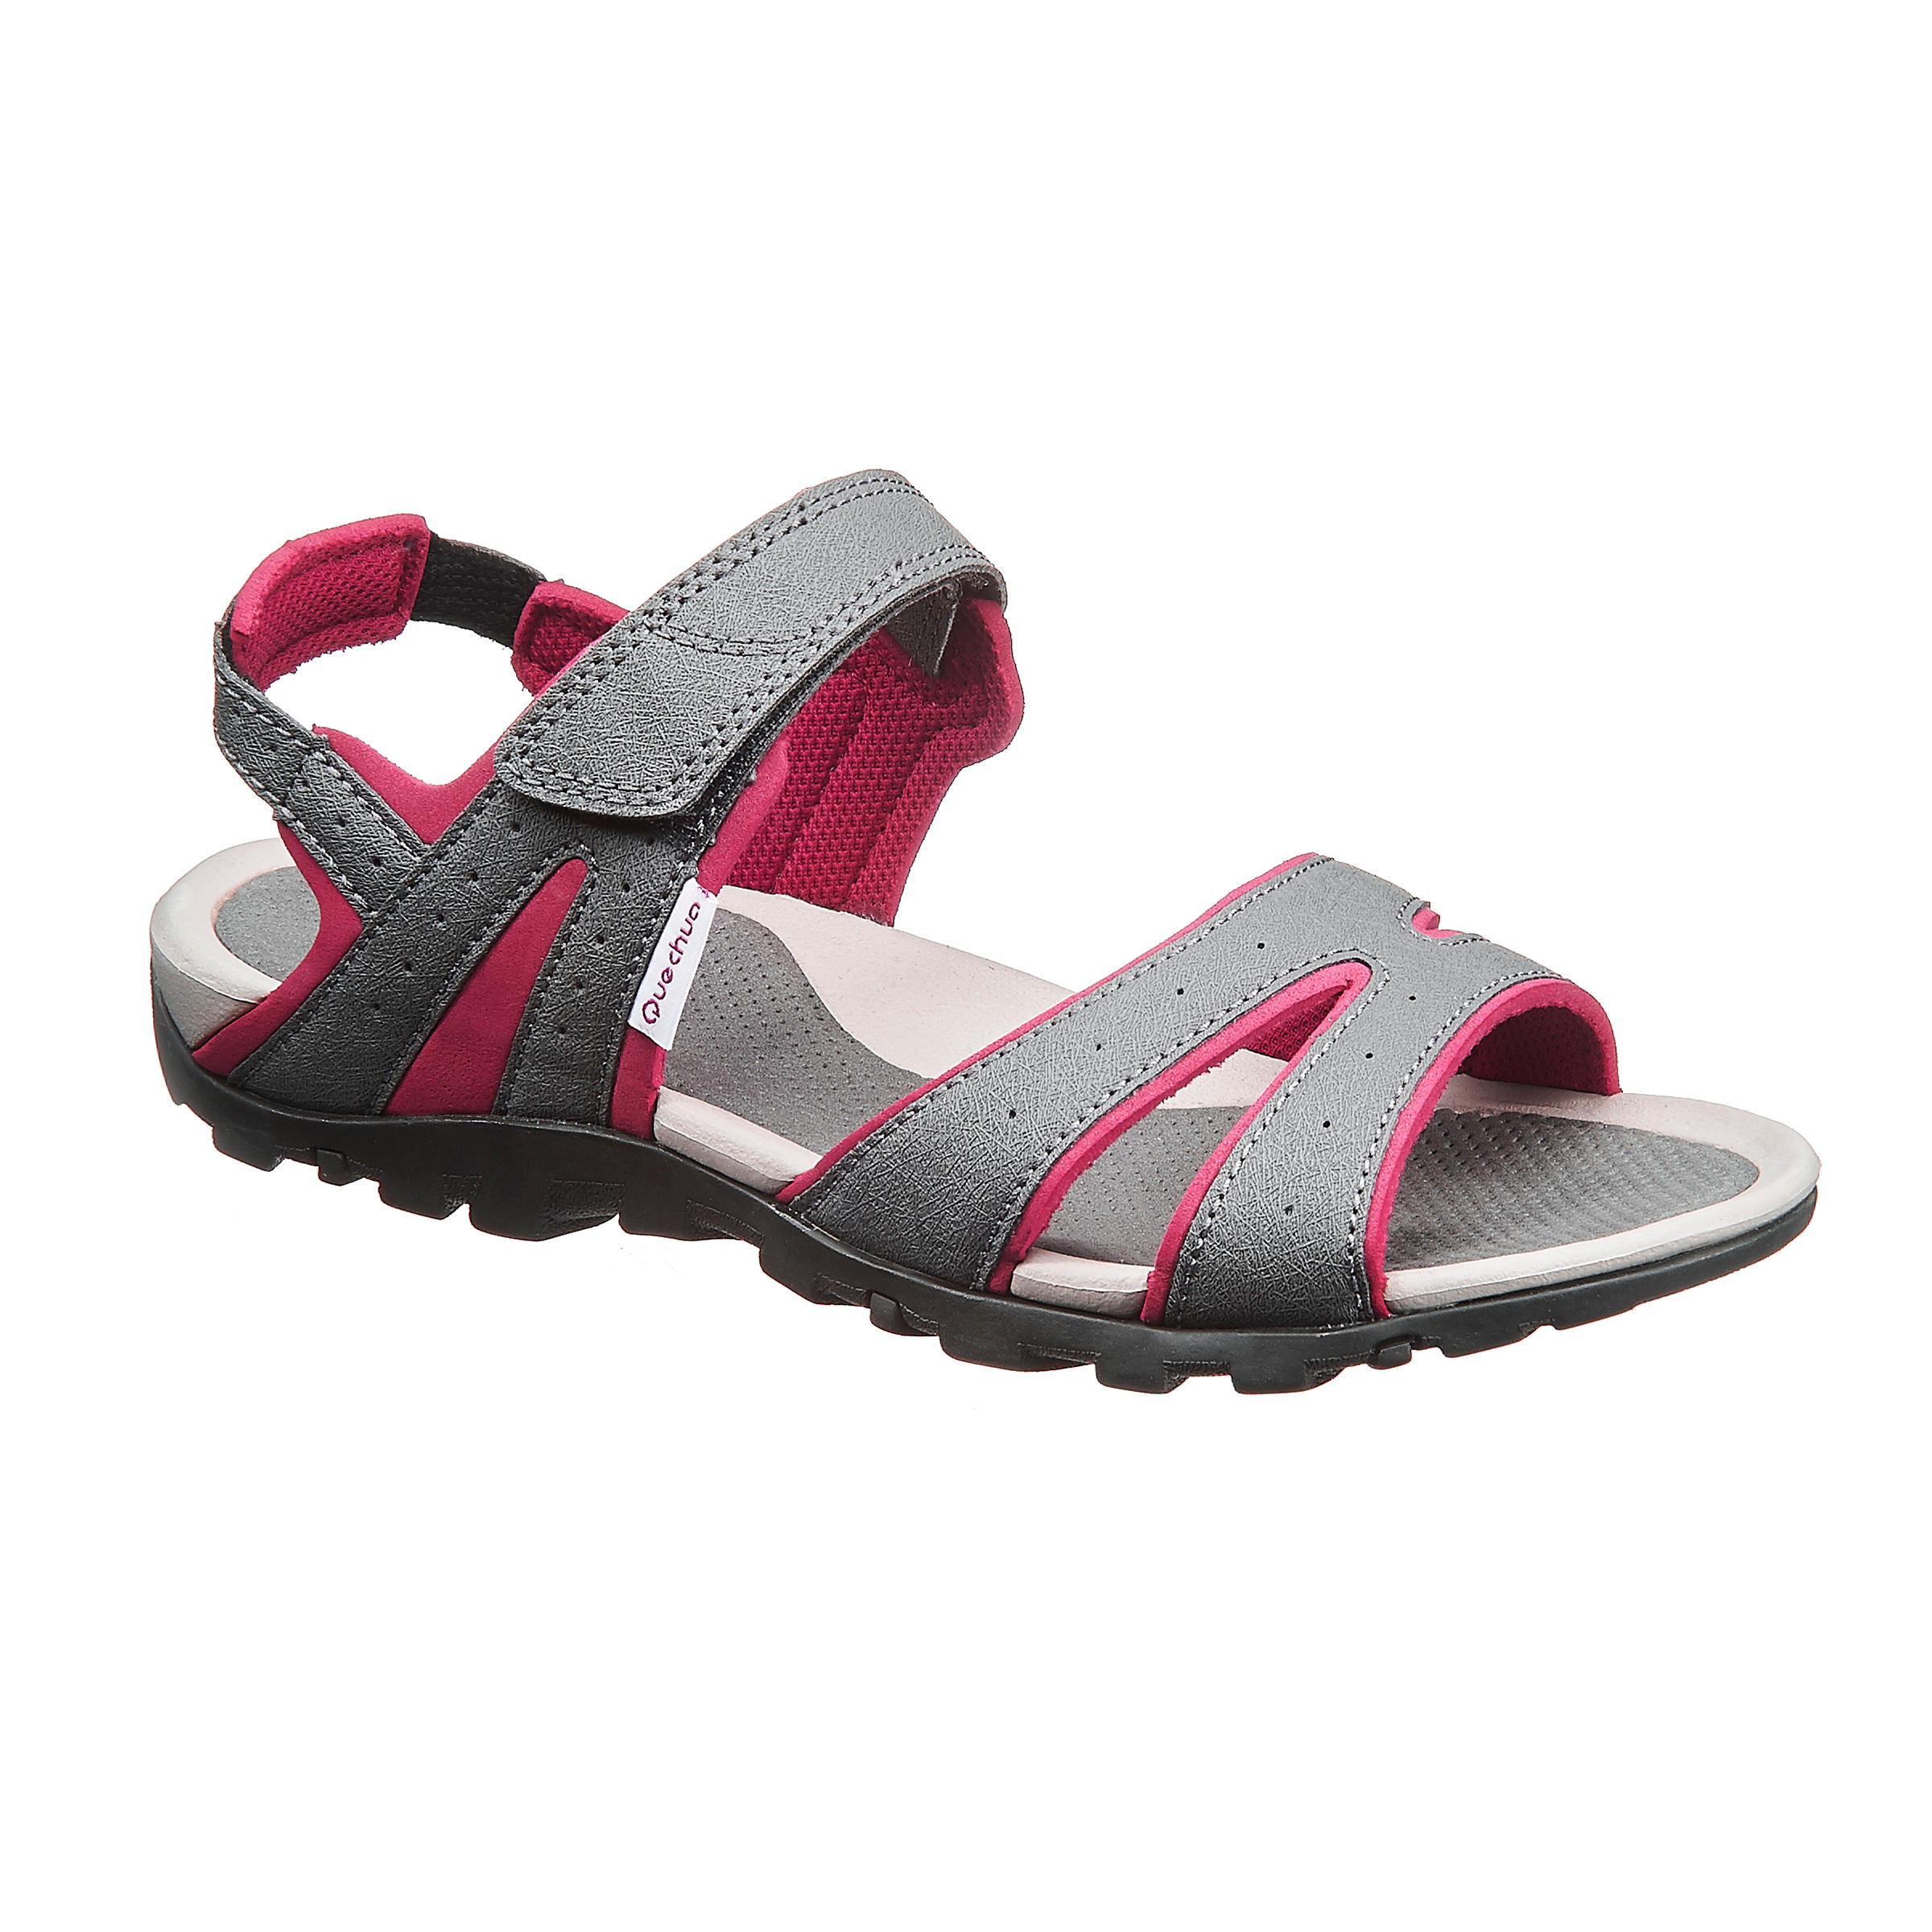 Arpenaz 50 Hiking Sandal Grey/Pink